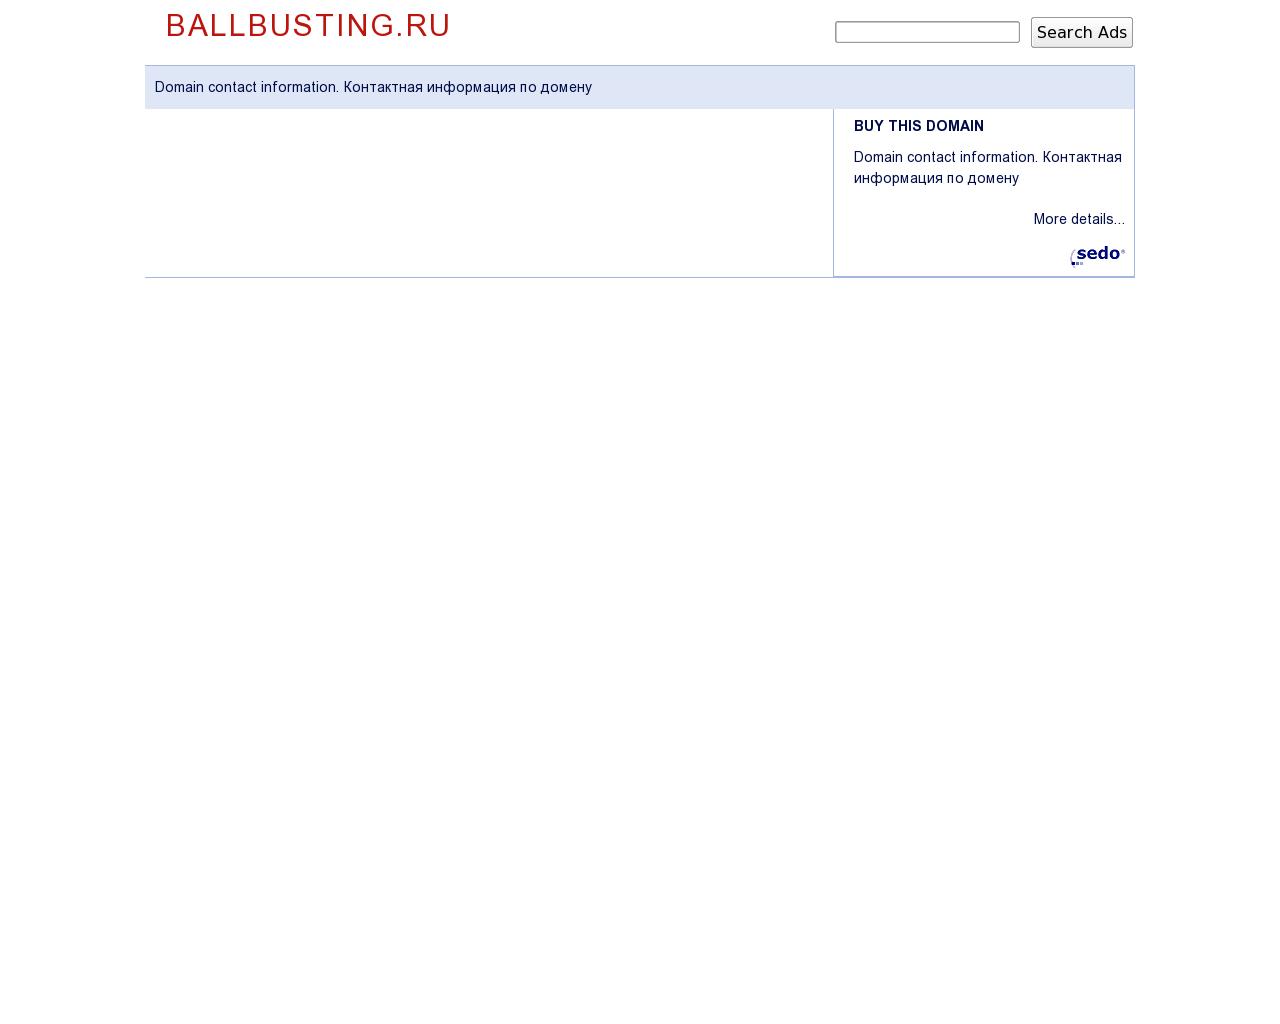 Изображение сайта ballbusting.ru в разрешении 1280x1024